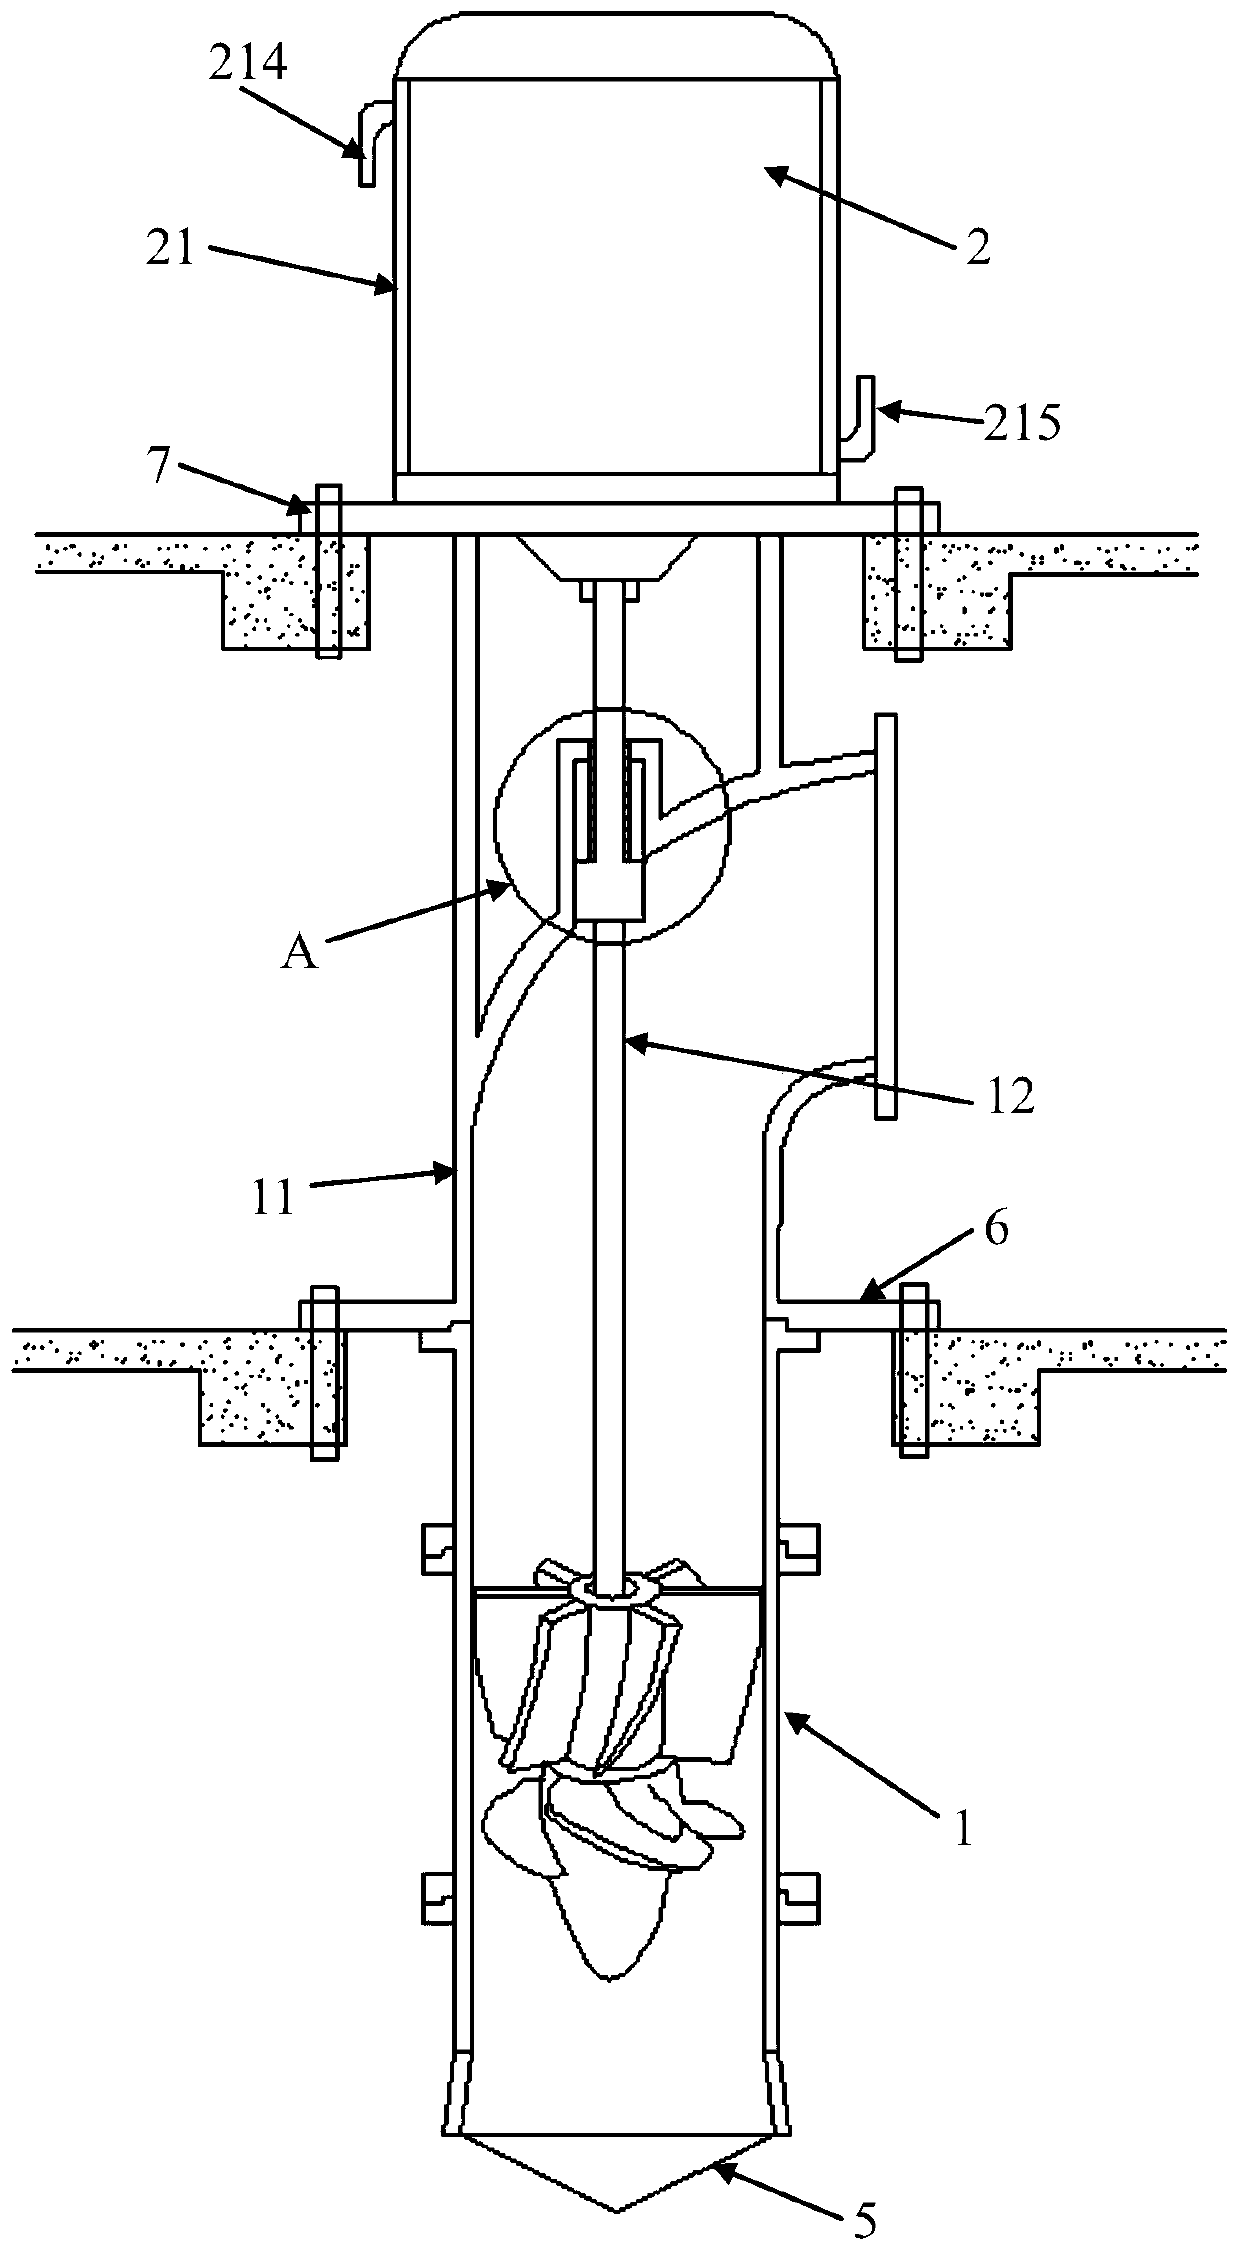 Novel axial flow pump